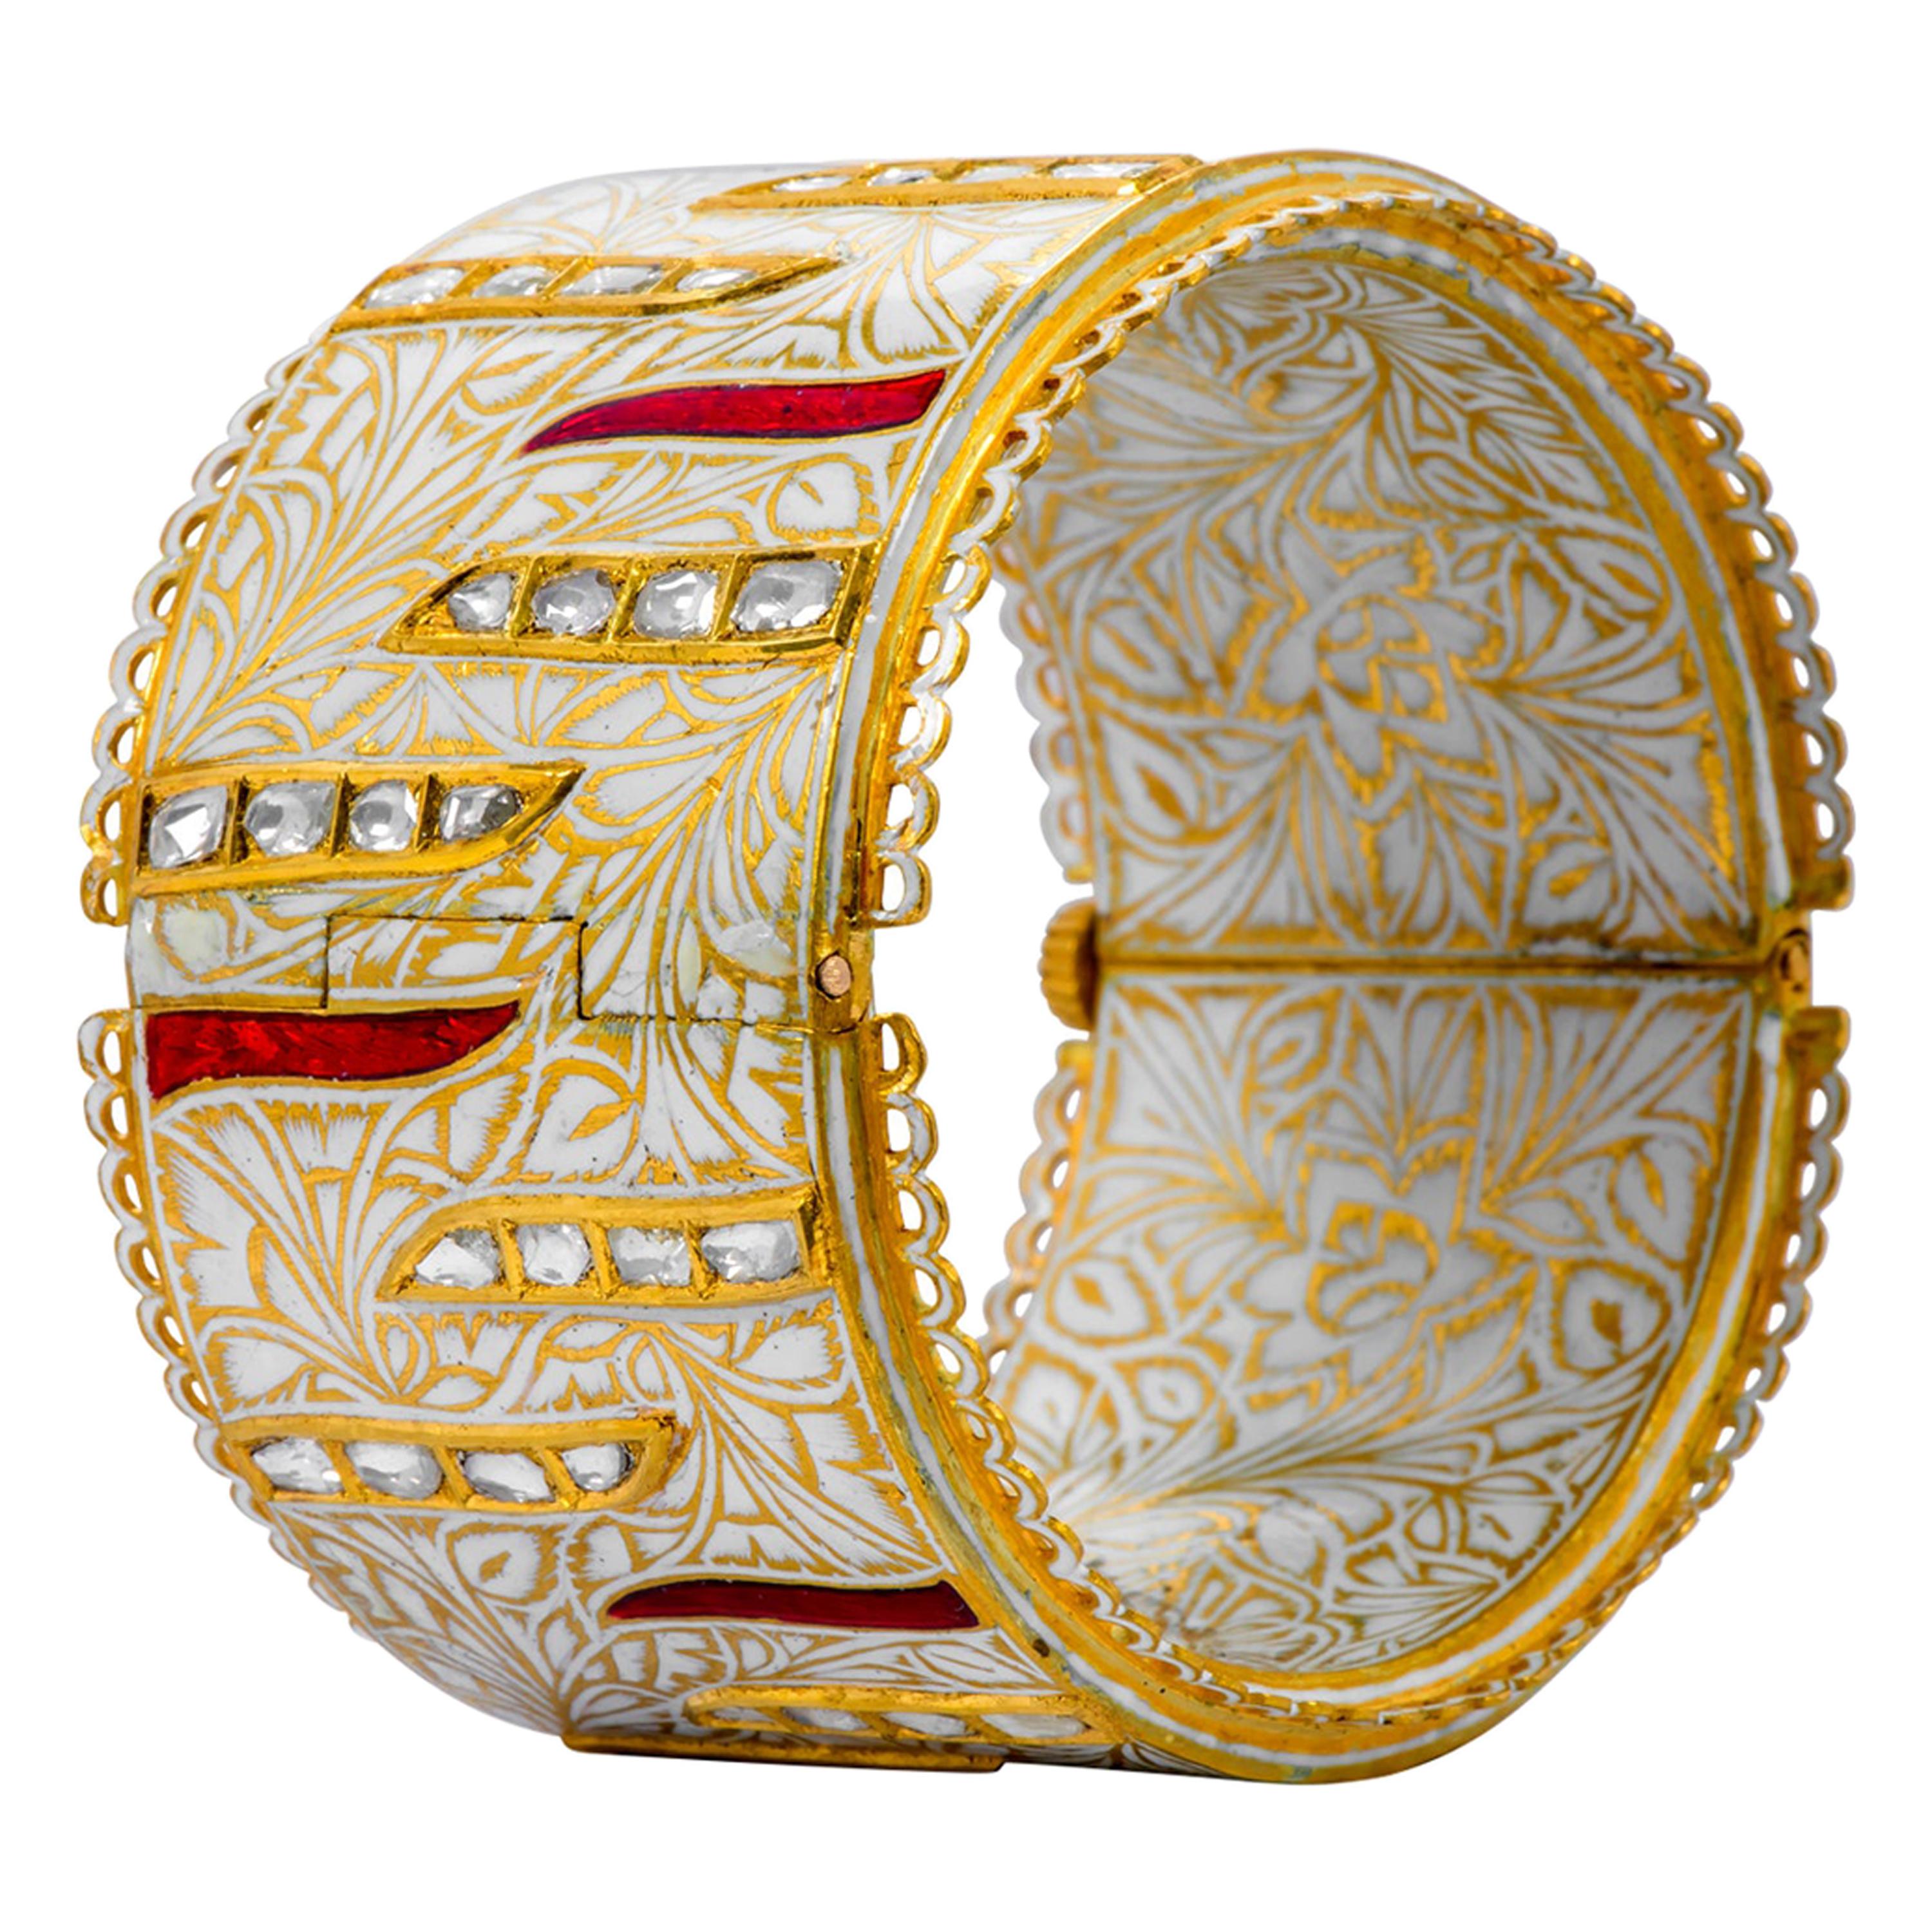 Armreif aus 22 Karat Gelbgold mit Diamanten, roter und weißer Emaille, handgefertigt